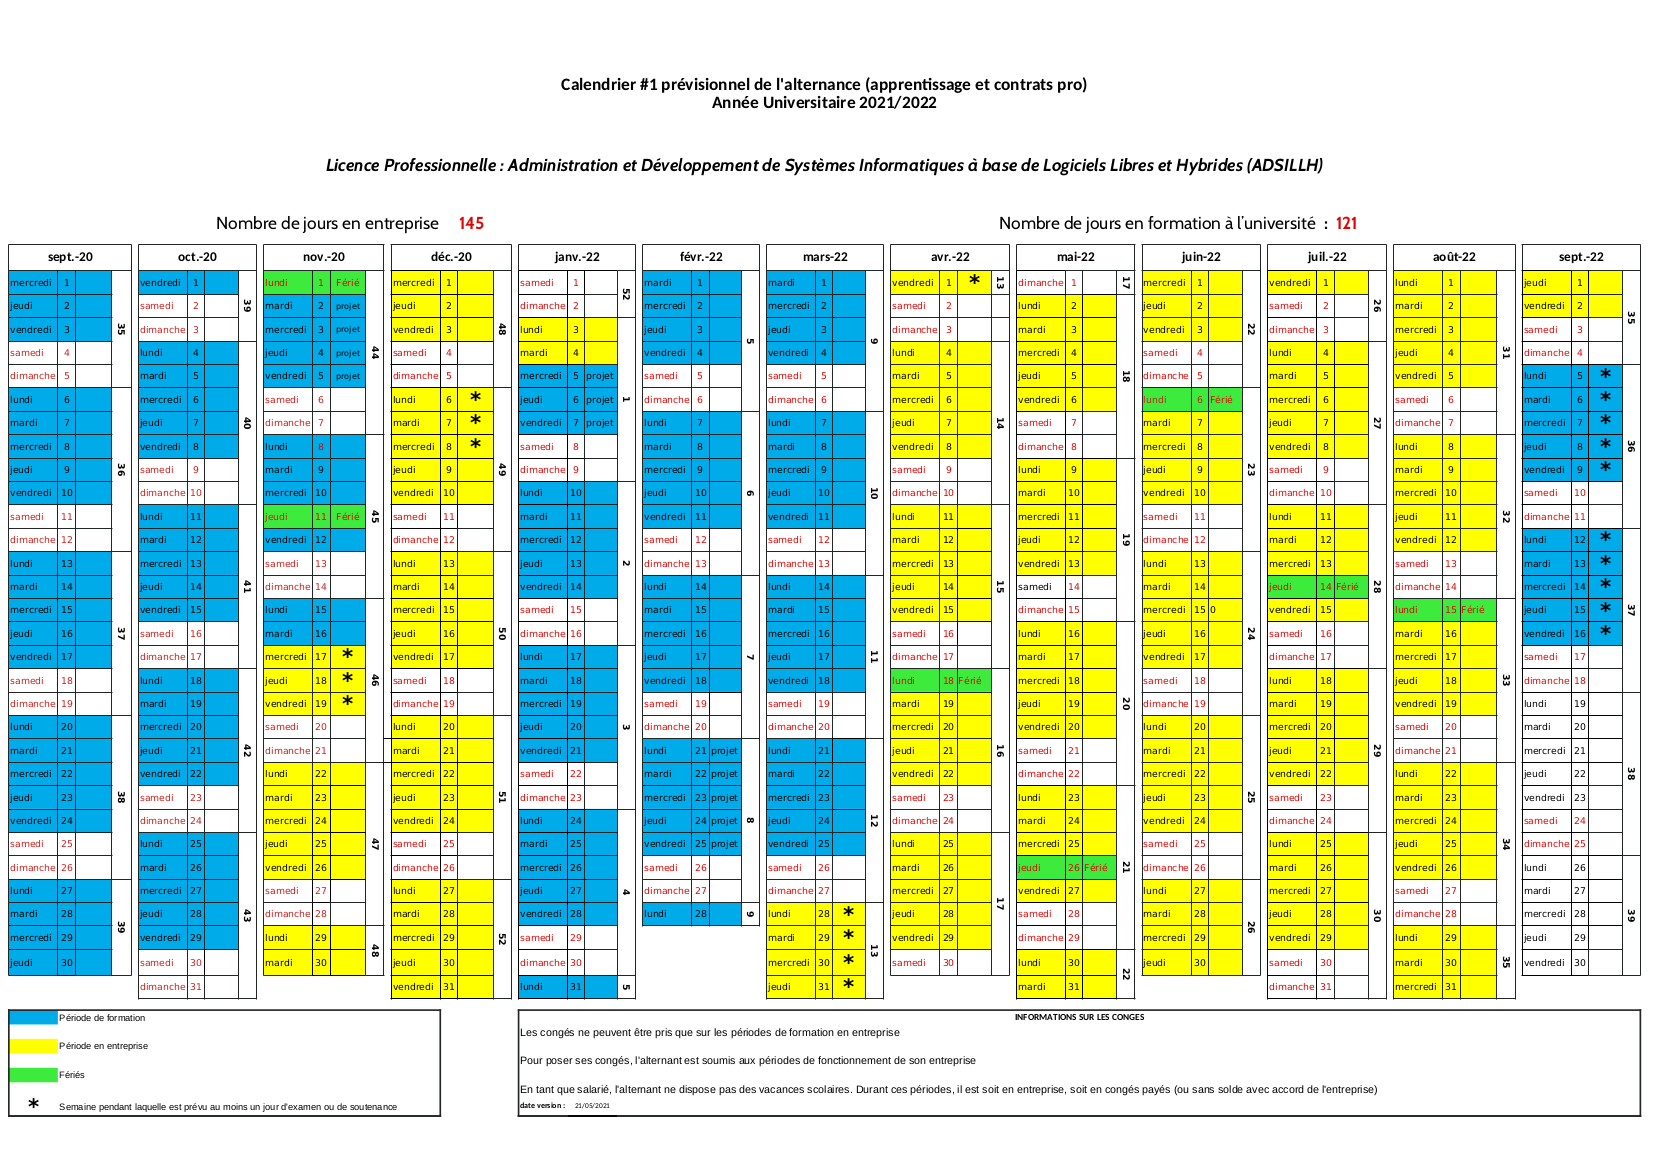 Calendrier prévisionnel (2021-2022) [alternance 1]